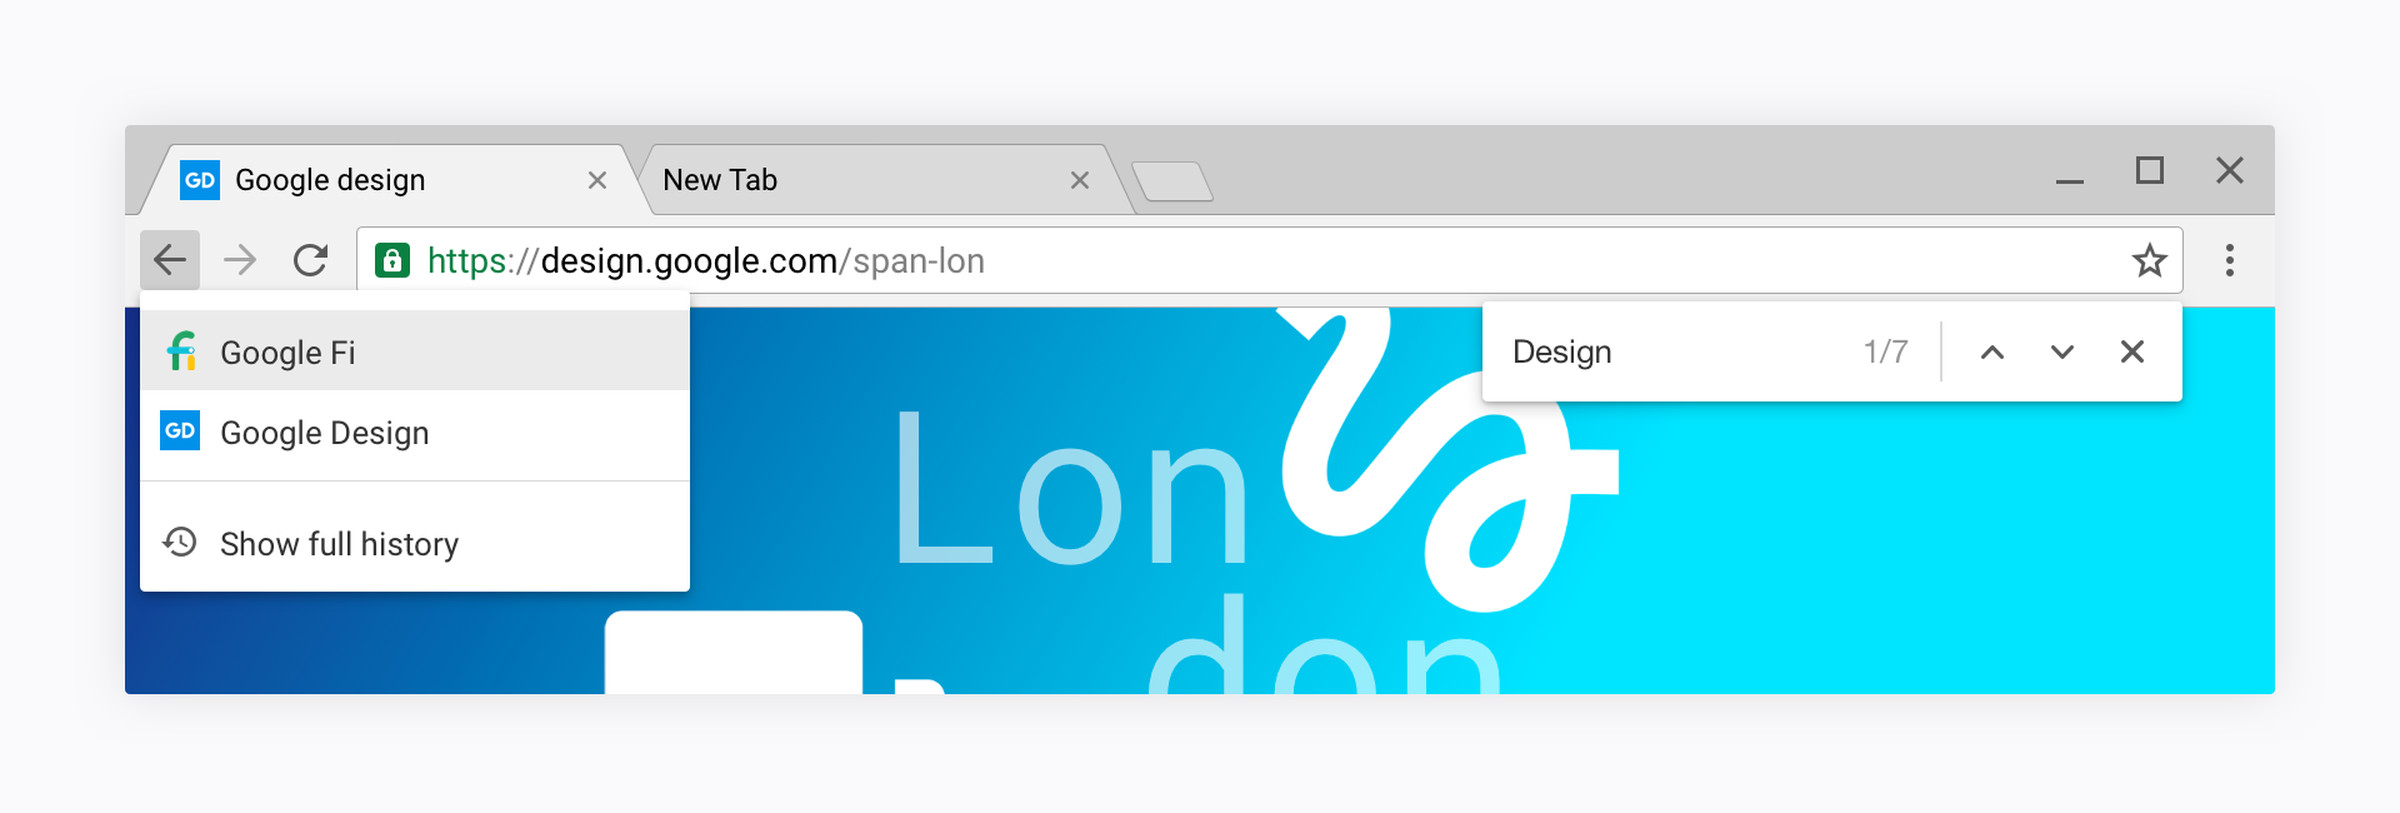 Chrome OS Material Design examples by Sebastien Gabriel